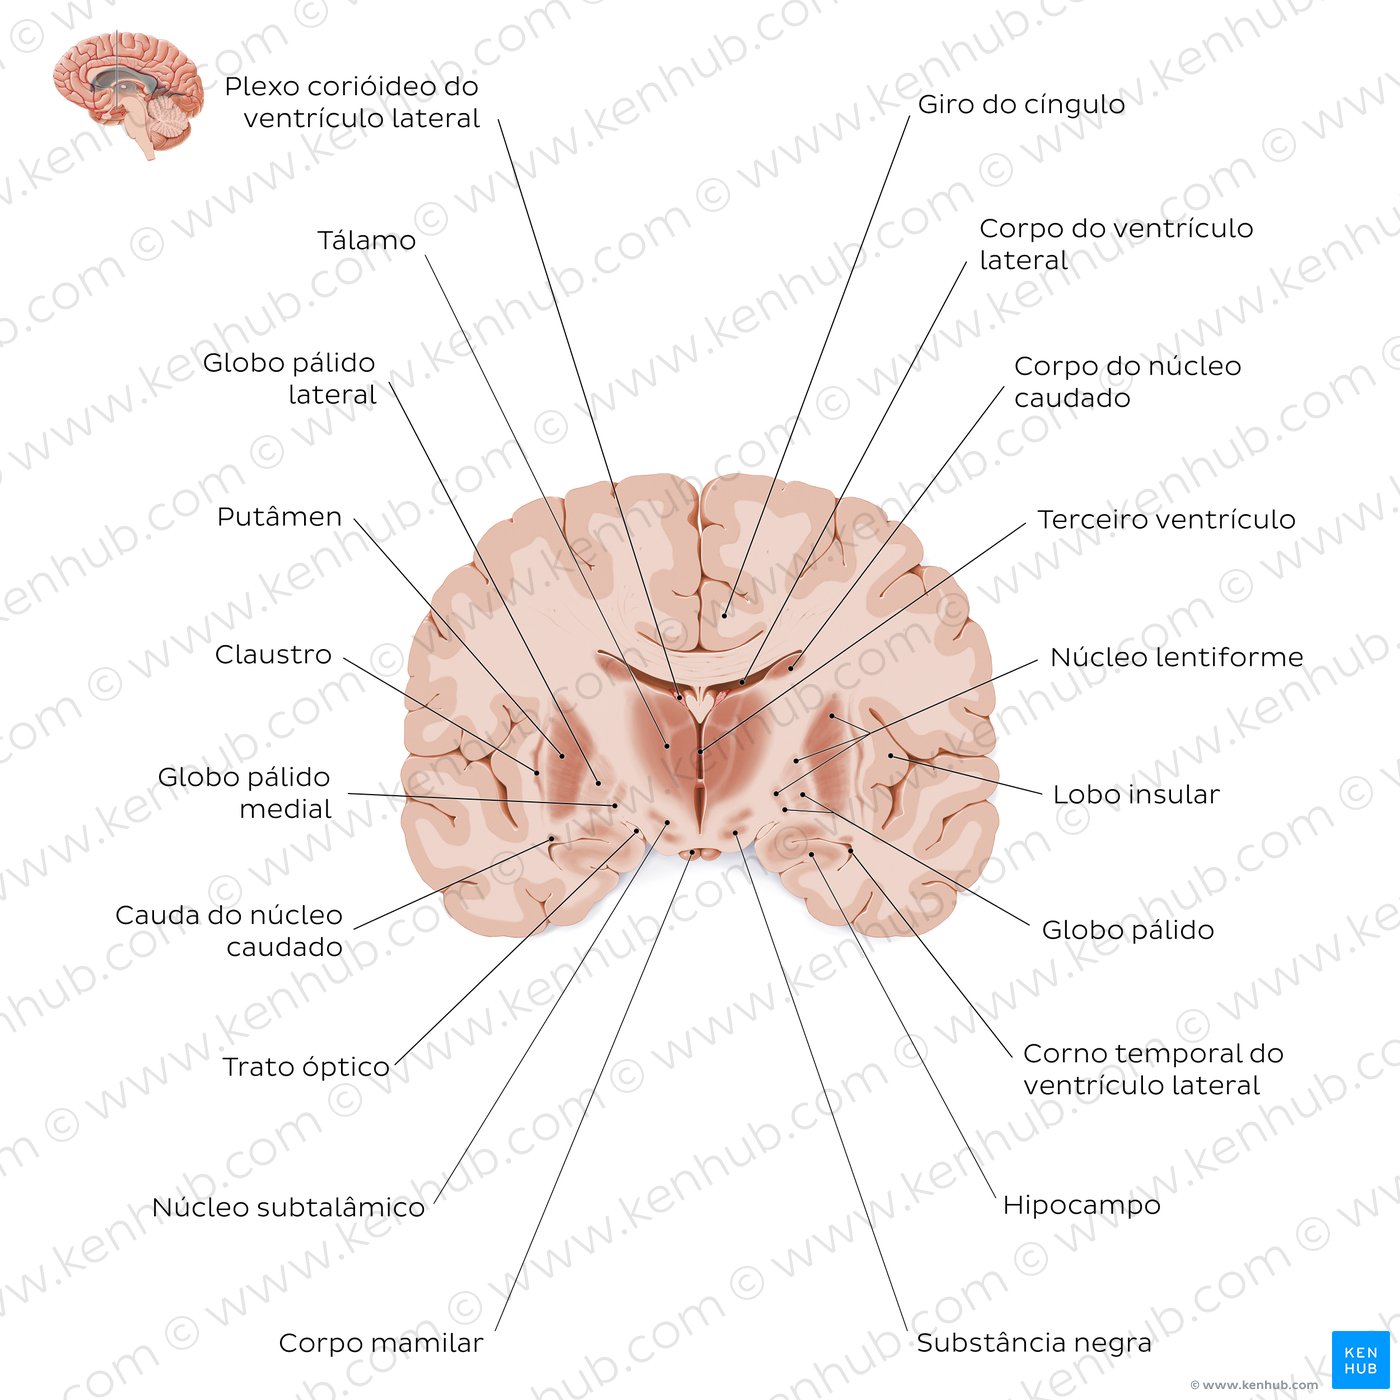 Secção coronal do cérebro ao nível do tálamo - Visão geral